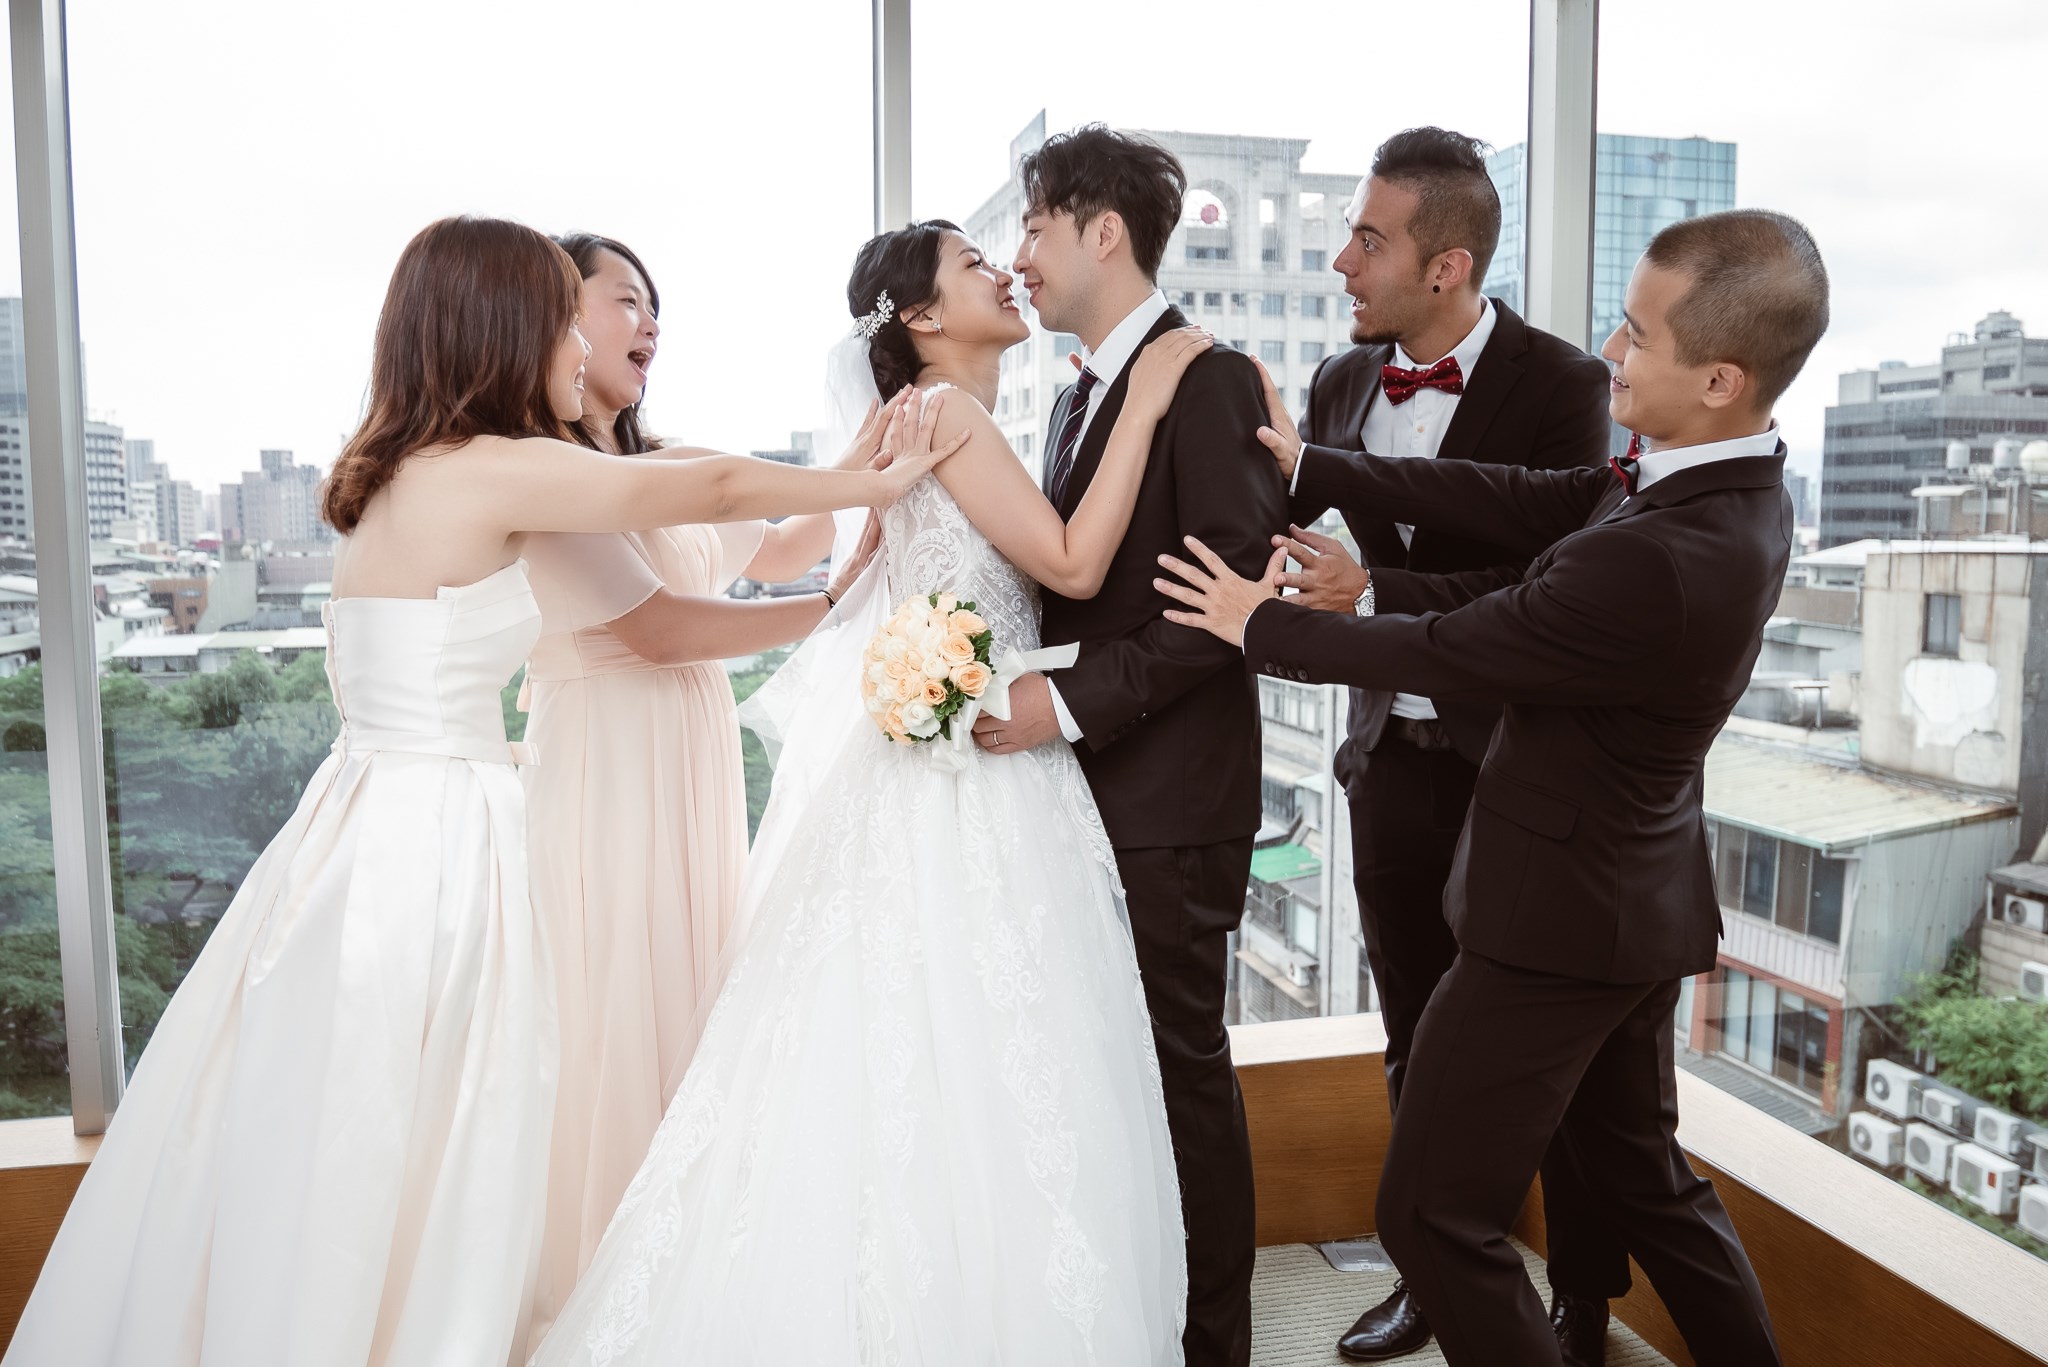 婚攝小光 | HIKARU 視覺印象
■ 婚禮攝影 台北晶華酒店 ■

非常喜歡這場新人的互動
總是可以在一些小地方
感受到彼此的濃情密意
有很多小細節上
則充滿了台式婚禮的元素
__
https://hikaruimage.com
__
■平面攝影 : 婚攝小光 -Hikaru視覺印象-
■場地 : Regent Taipei晶華酒店 

#婚攝小光  #推薦婚攝   #婚禮紀錄   #晶華酒店婚攝  #台北晶華酒店  #HIKARU視覺印象  #wedding  #prewedding